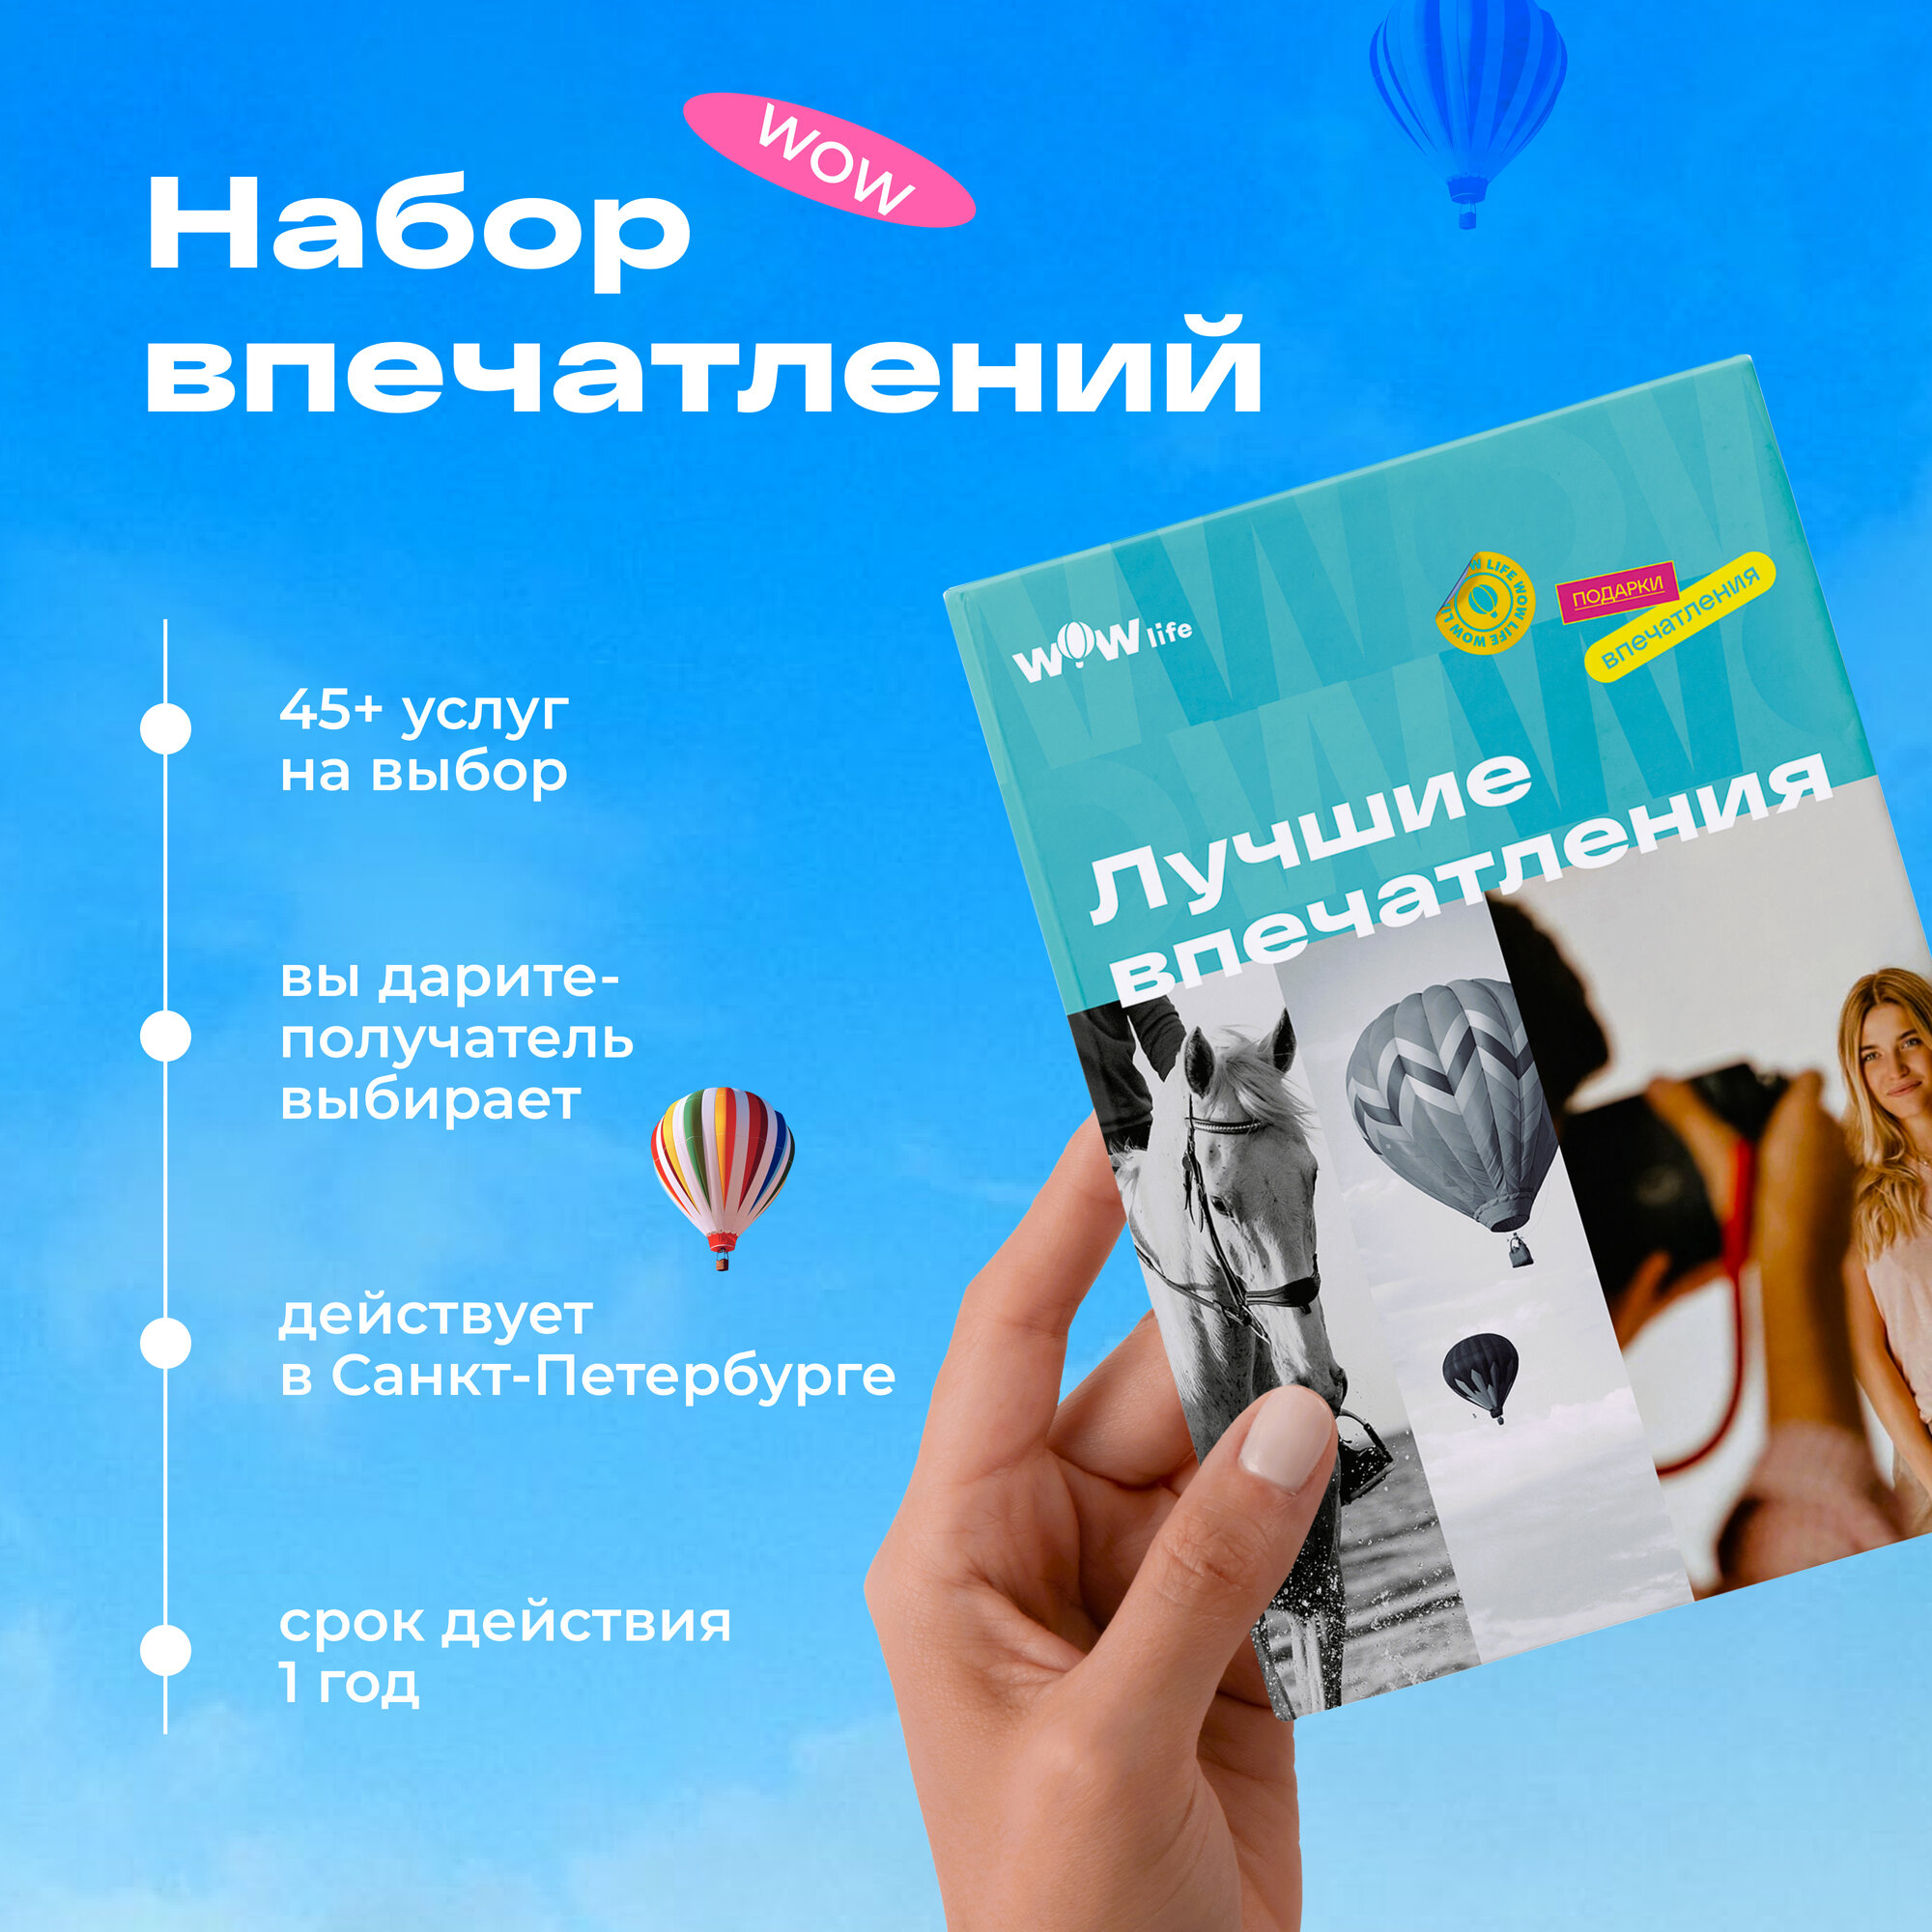 Подарочный сертификат WOWlife "Лучшие впечатления" - набор из впечатлений на выбор, Санкт-Петербург